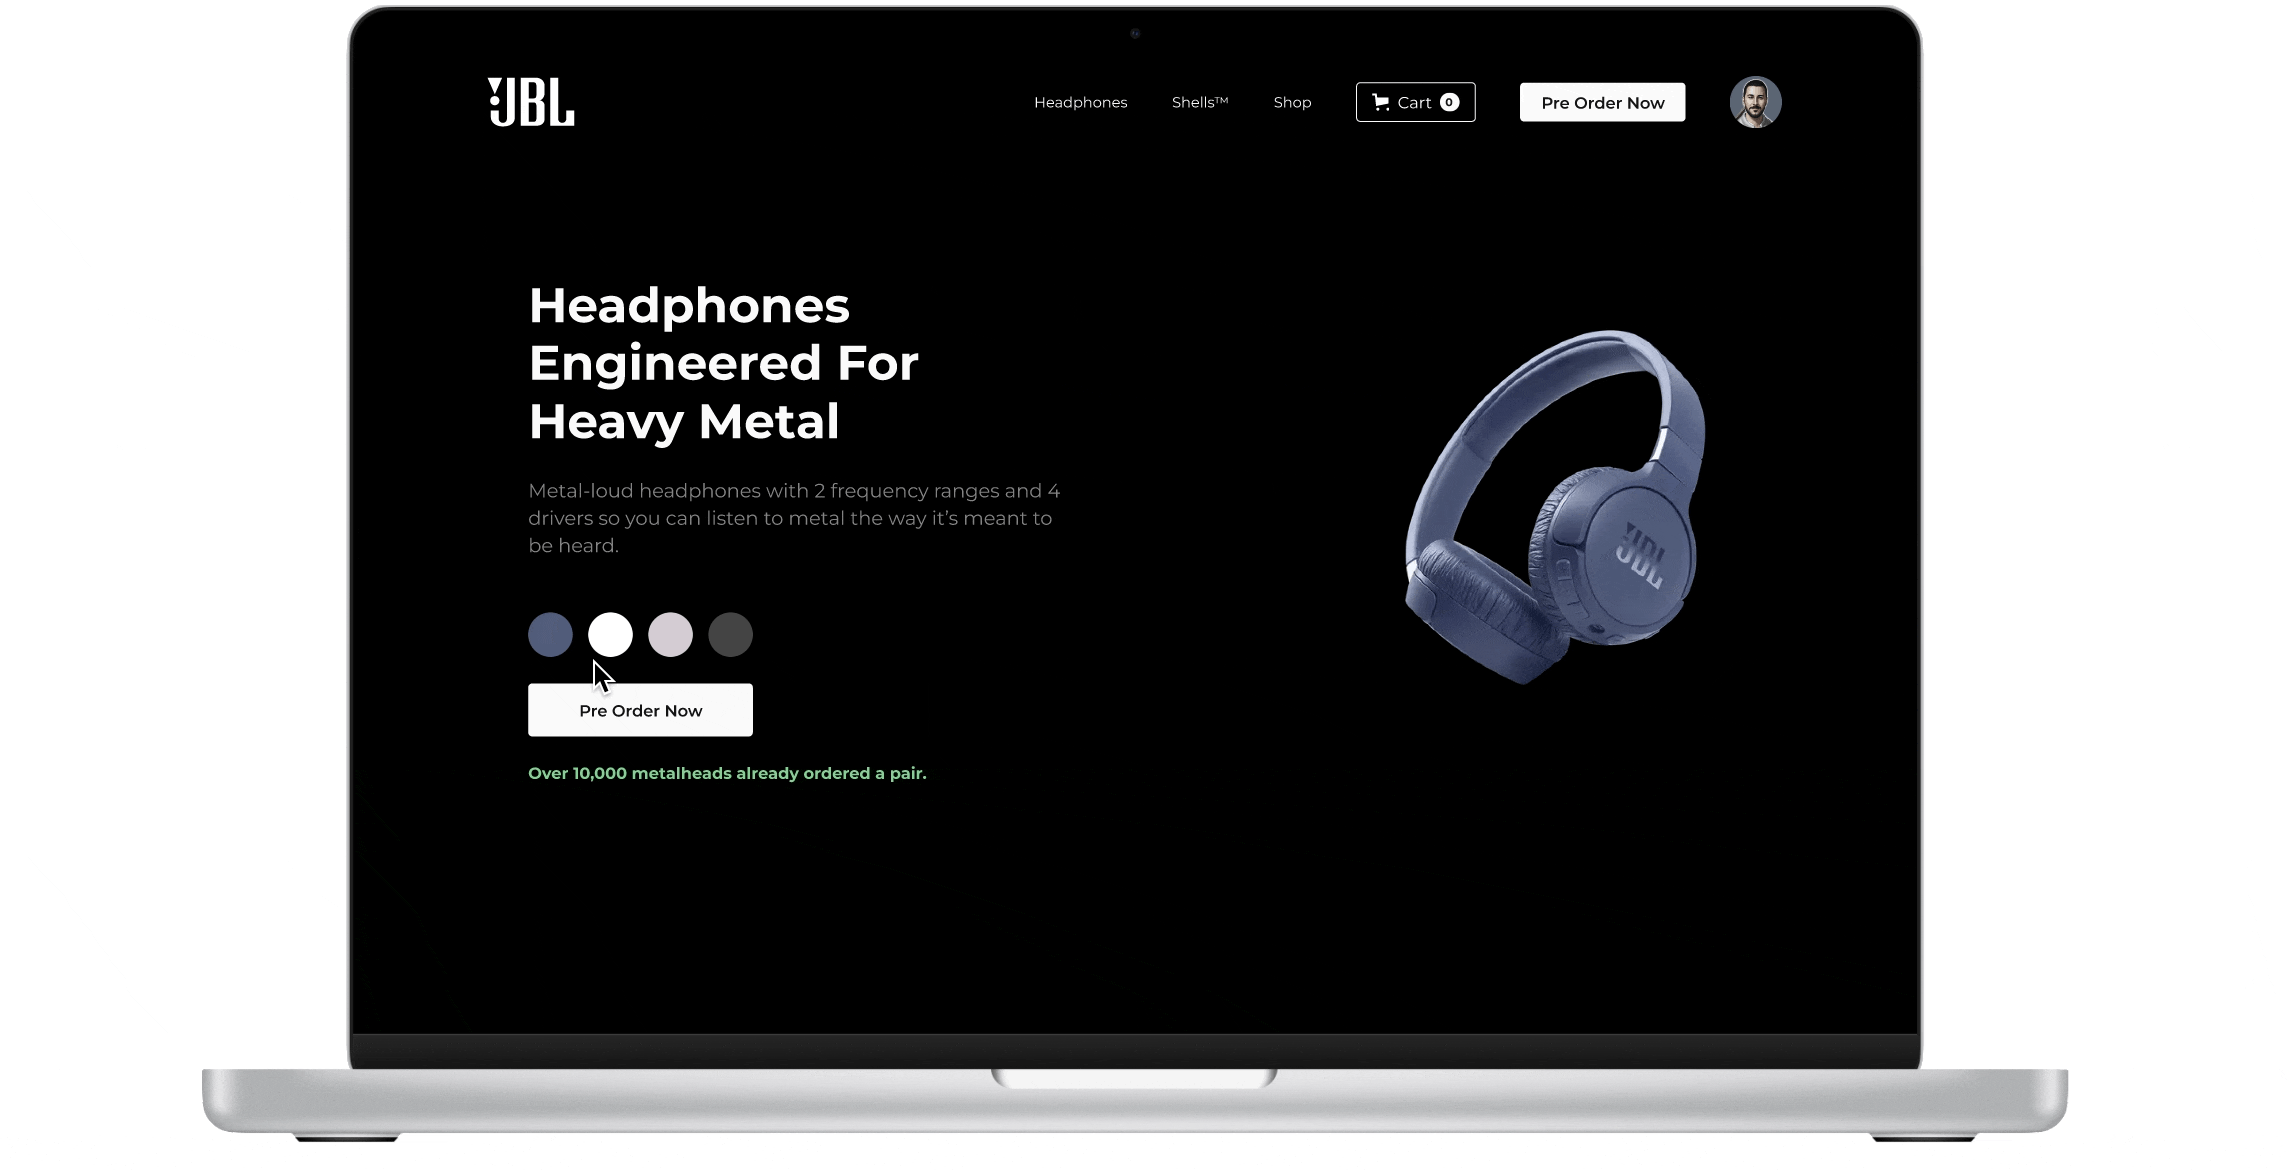 JBL Web Design headphone jbl jblweb product product design productdesign ui user experience ux